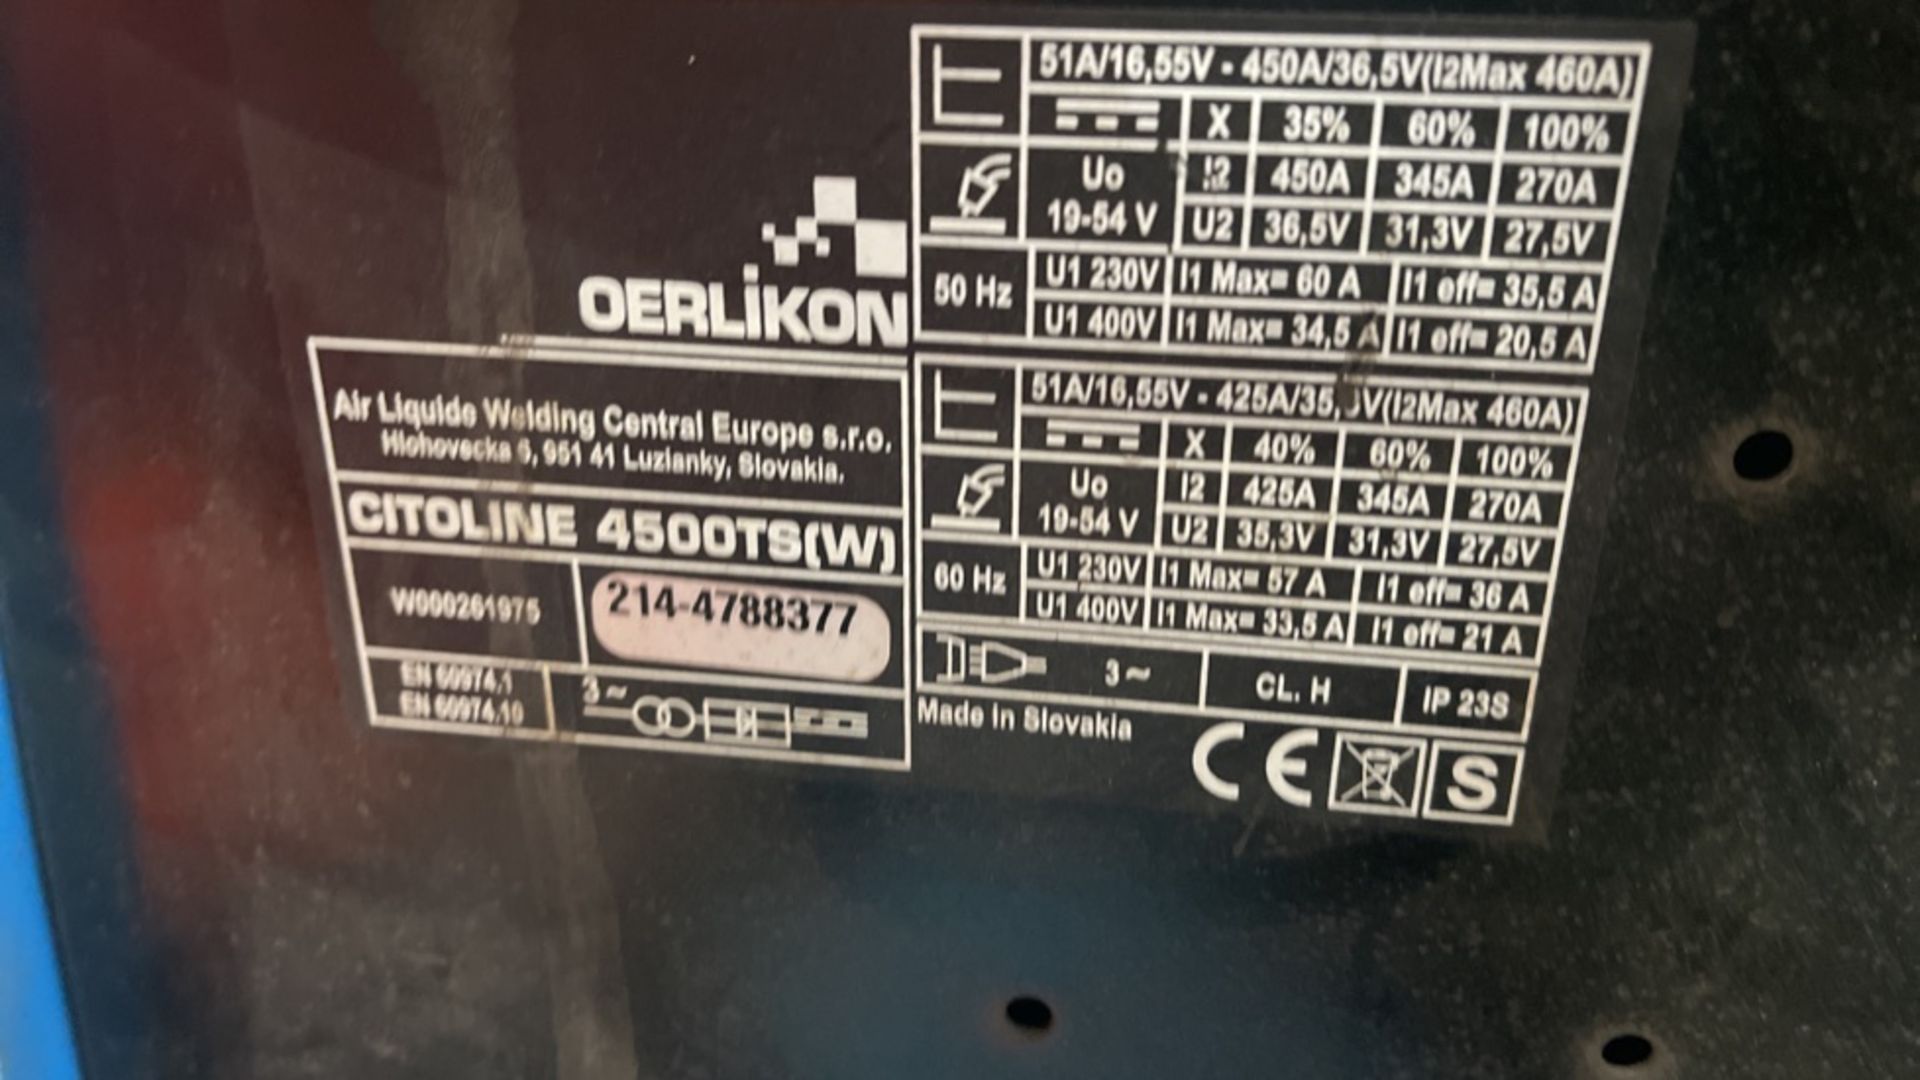 OERLIKON 4500 TS W ELECTRIC WELDER - Image 5 of 6